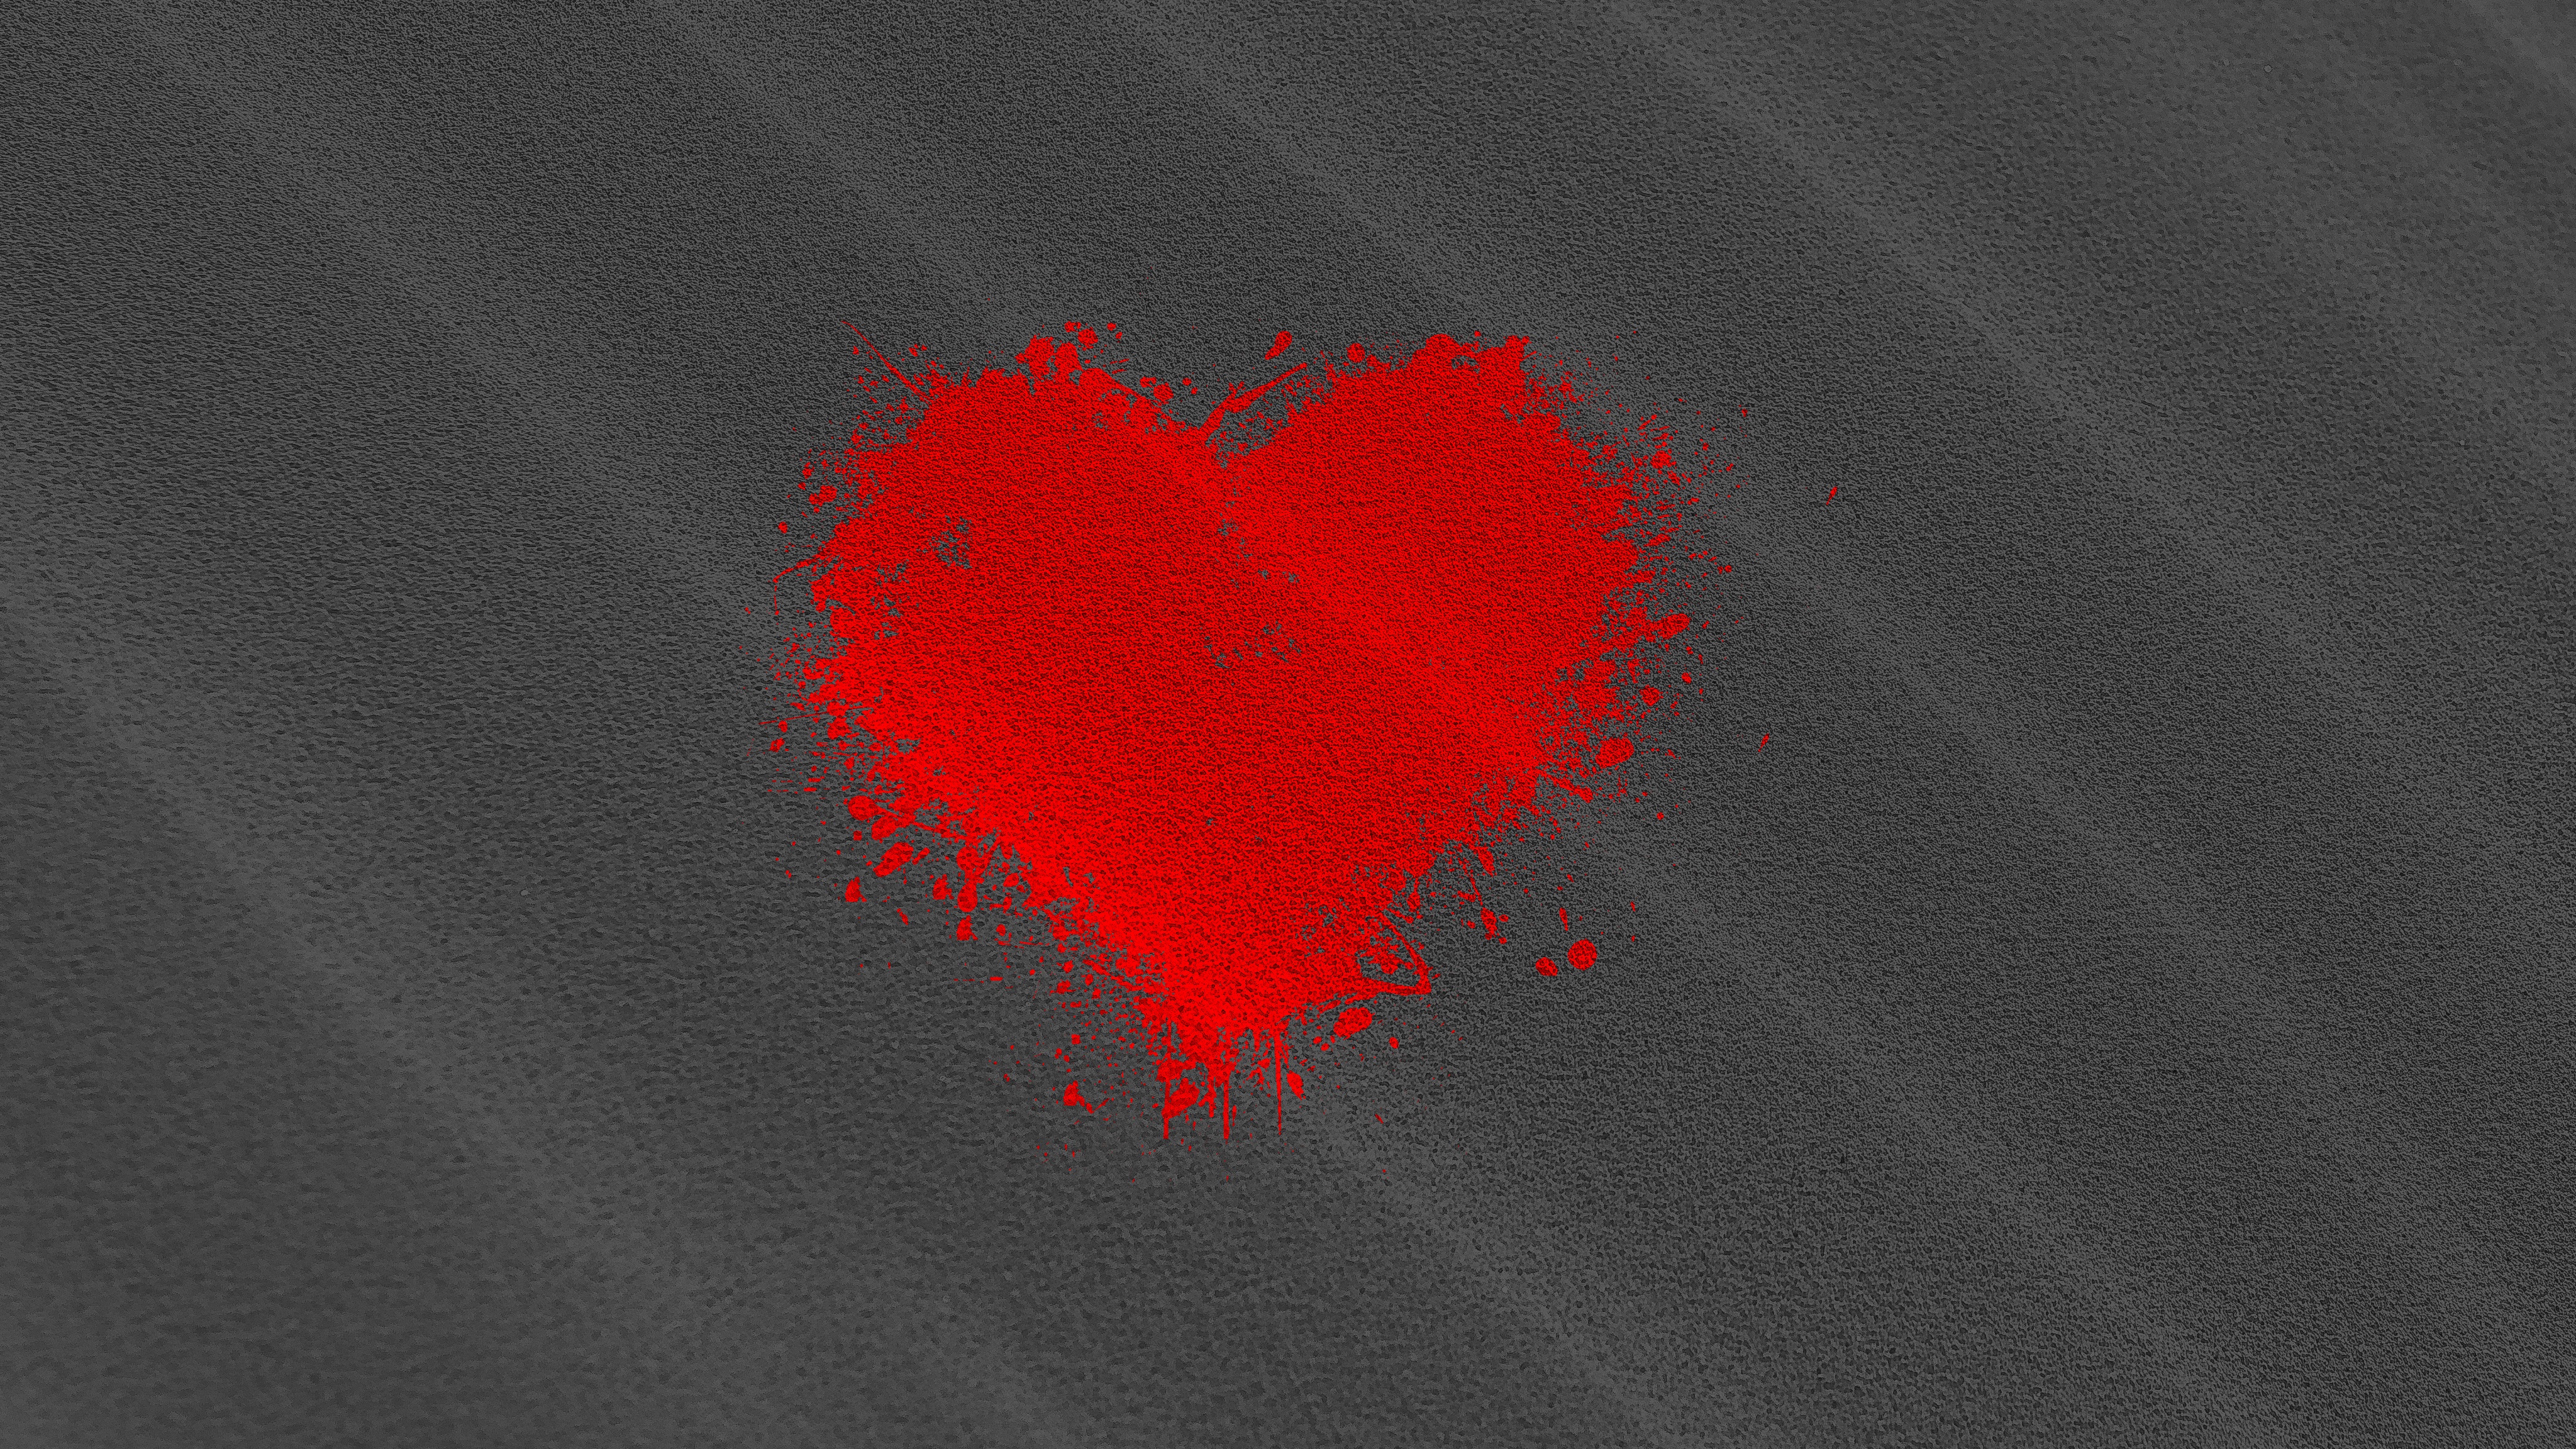 broken heart wallpaper hd for mobile